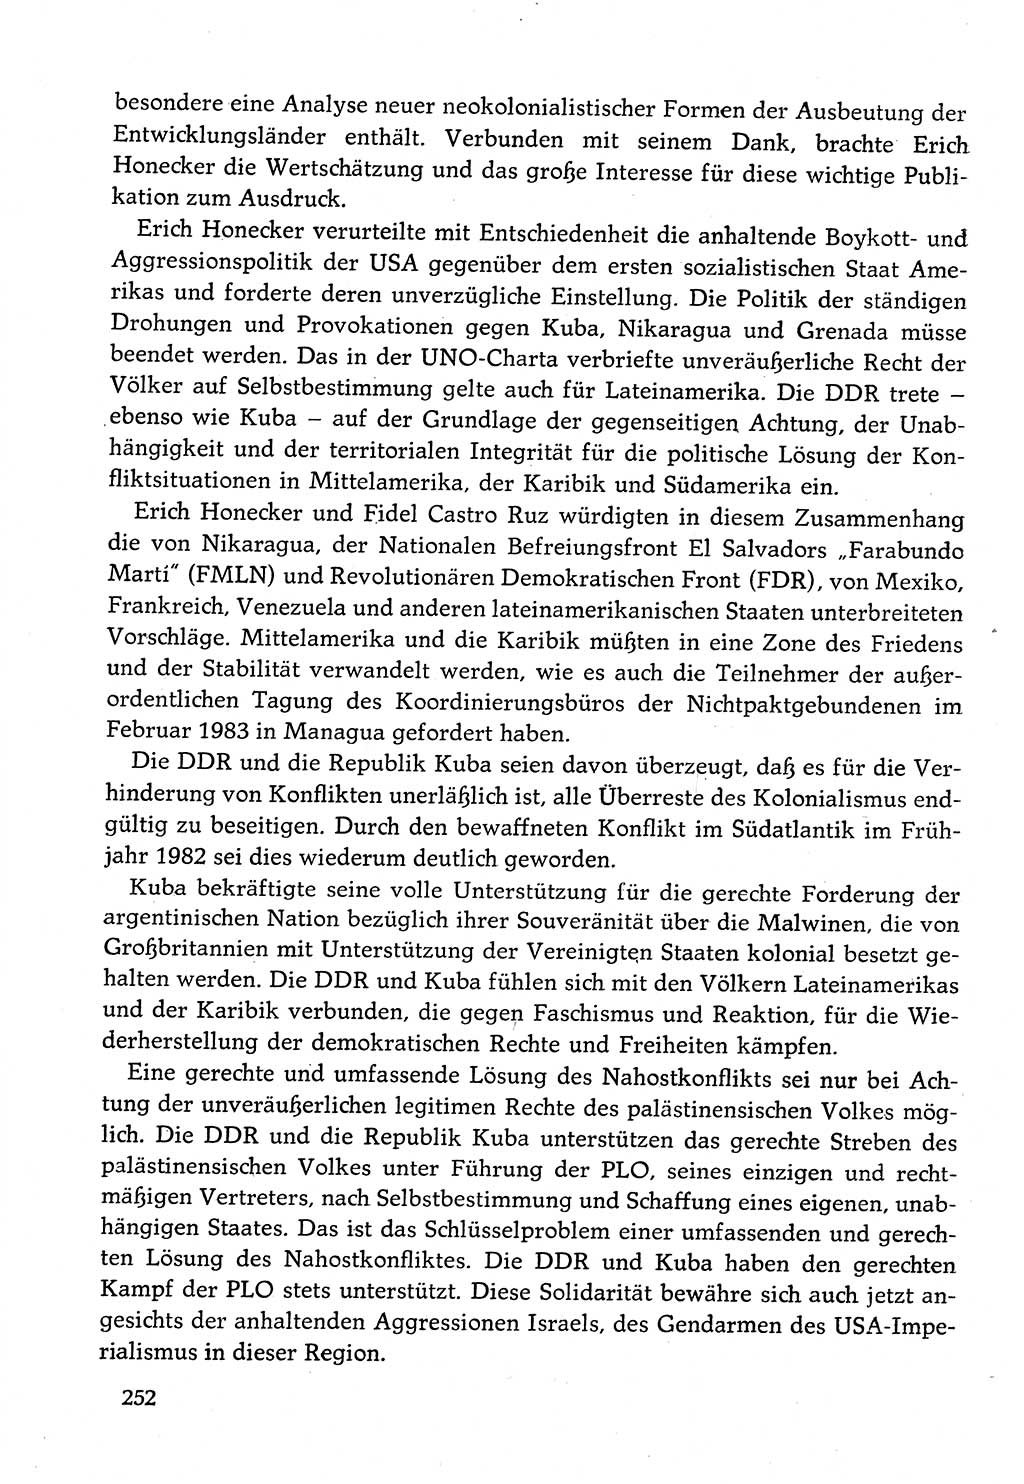 Dokumente der Sozialistischen Einheitspartei Deutschlands (SED) [Deutsche Demokratische Republik (DDR)] 1982-1983, Seite 252 (Dok. SED DDR 1982-1983, S. 252)